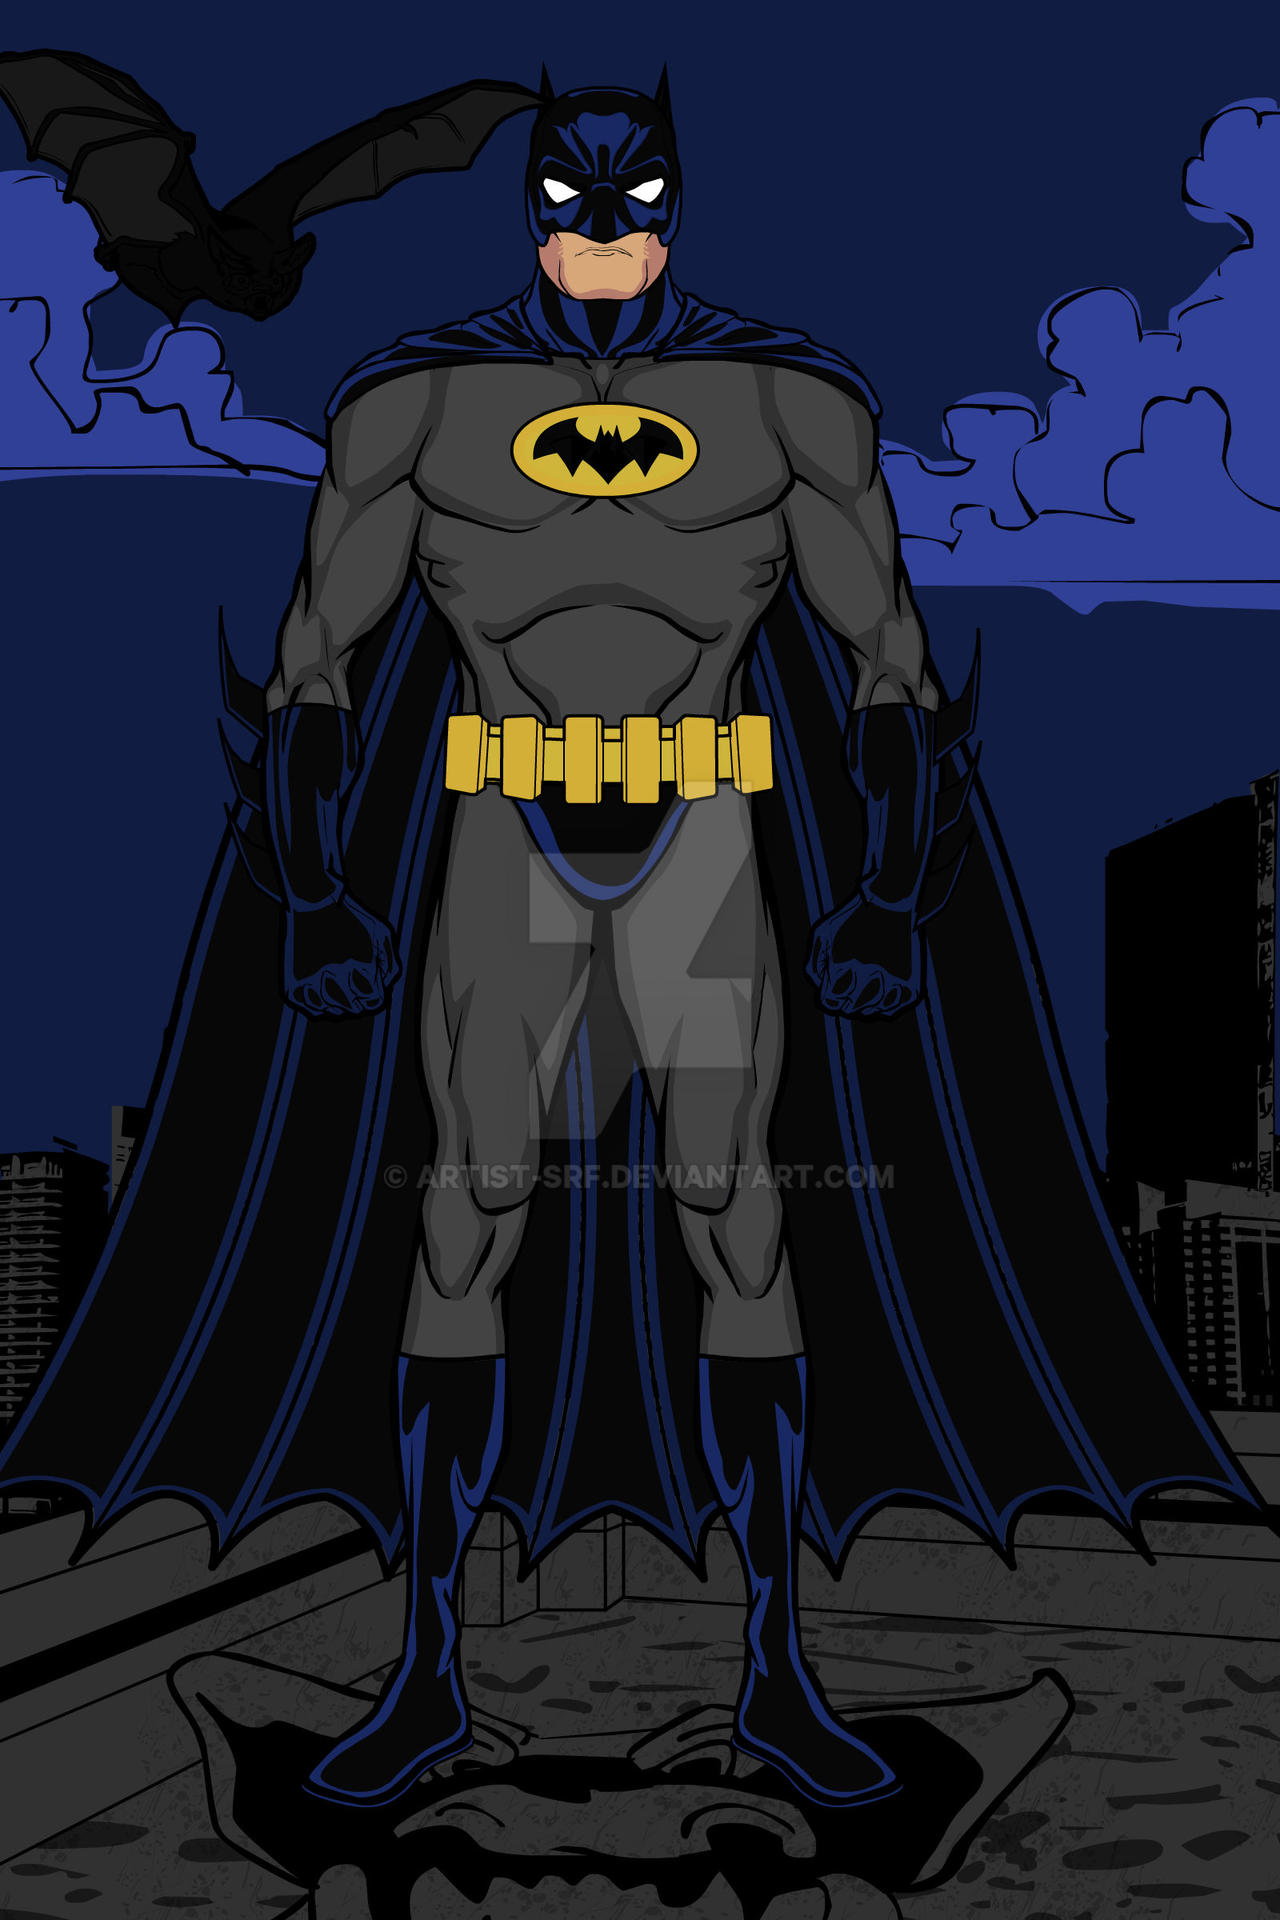 Heromachine-Batman by ARTIST-SRF on DeviantArt